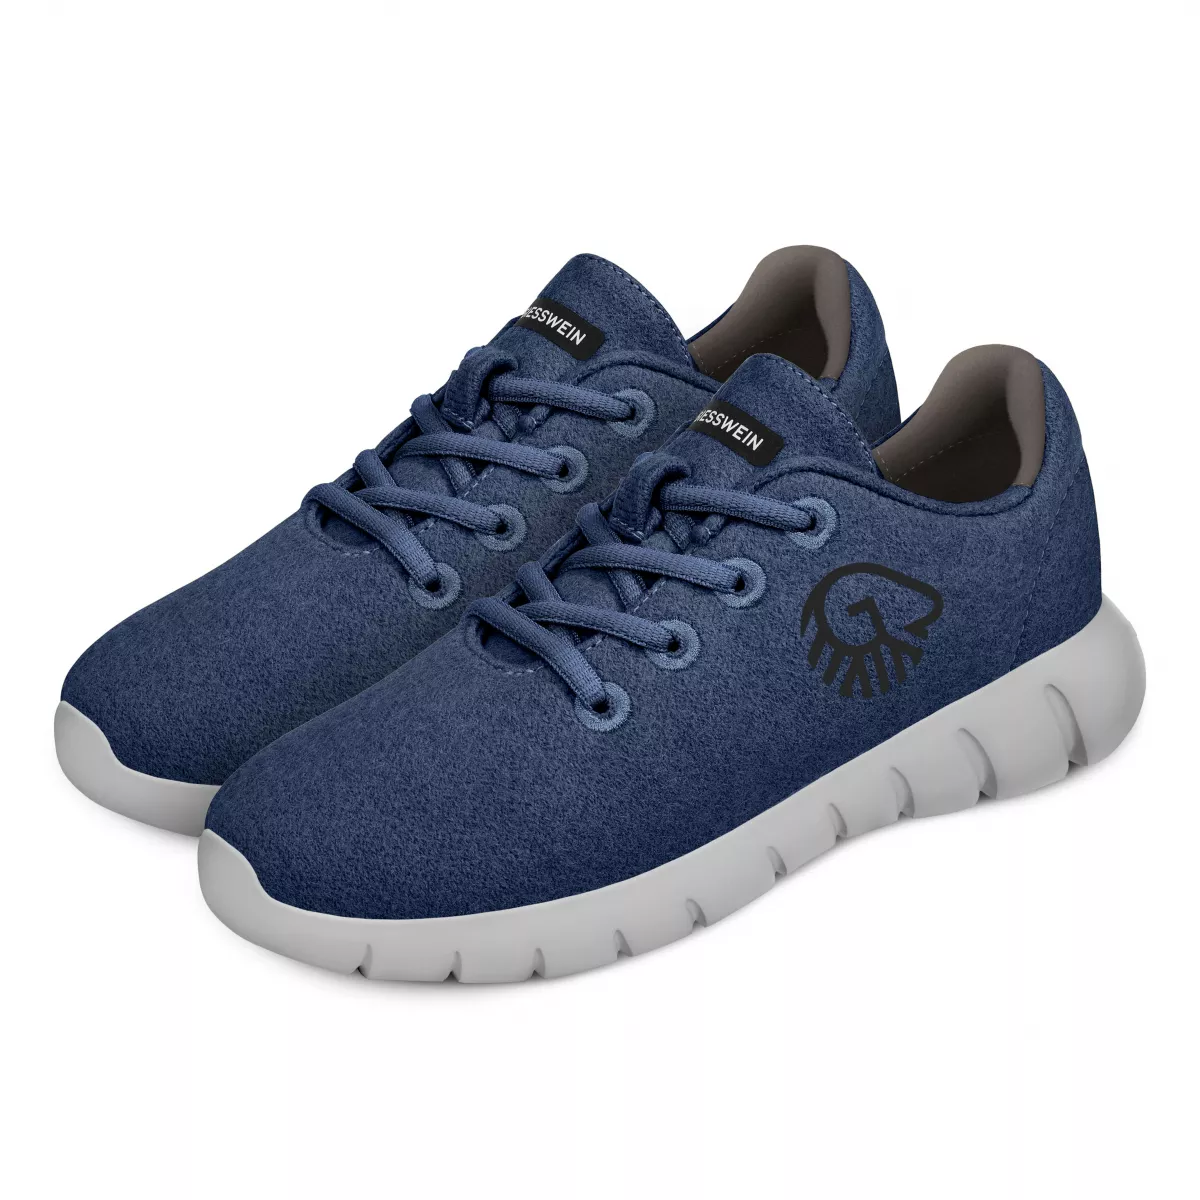 Pantofi barbati Merino Runners, ocean blue 45